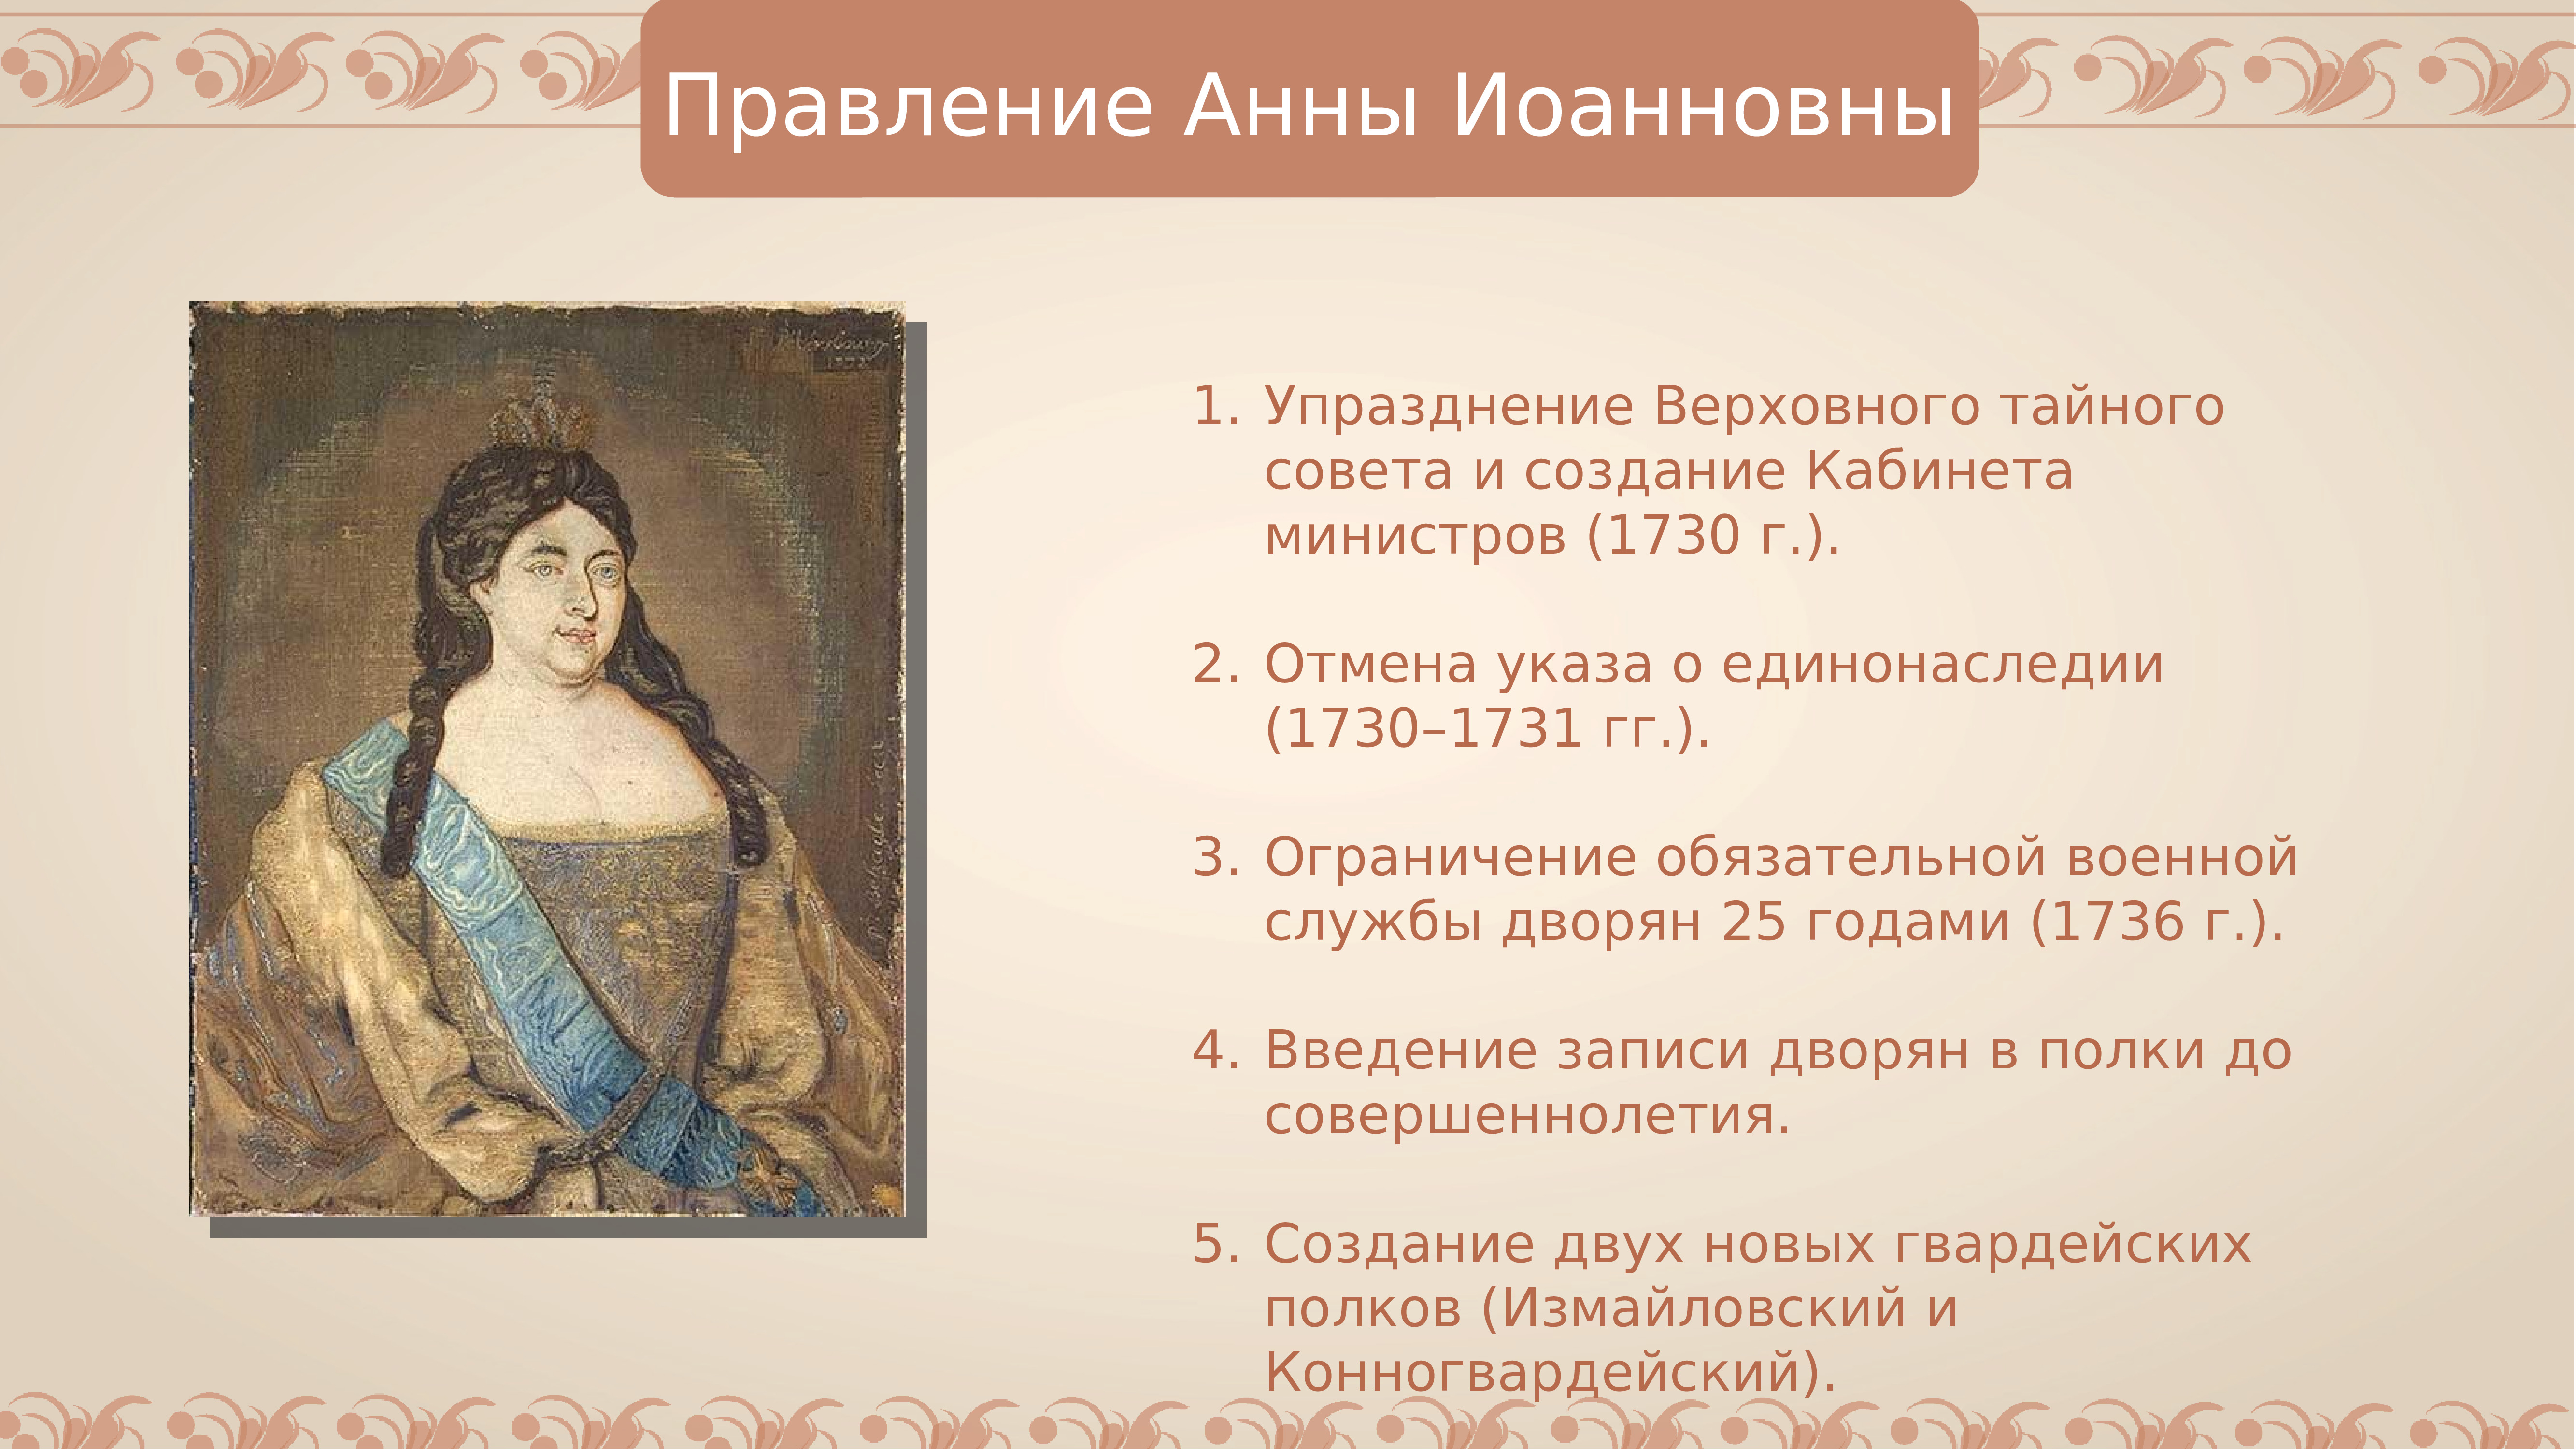 Сокращение срока дворянской службы. Правление Анны Иоанновны (1730-1740):. События правления Анны Иоанновны.